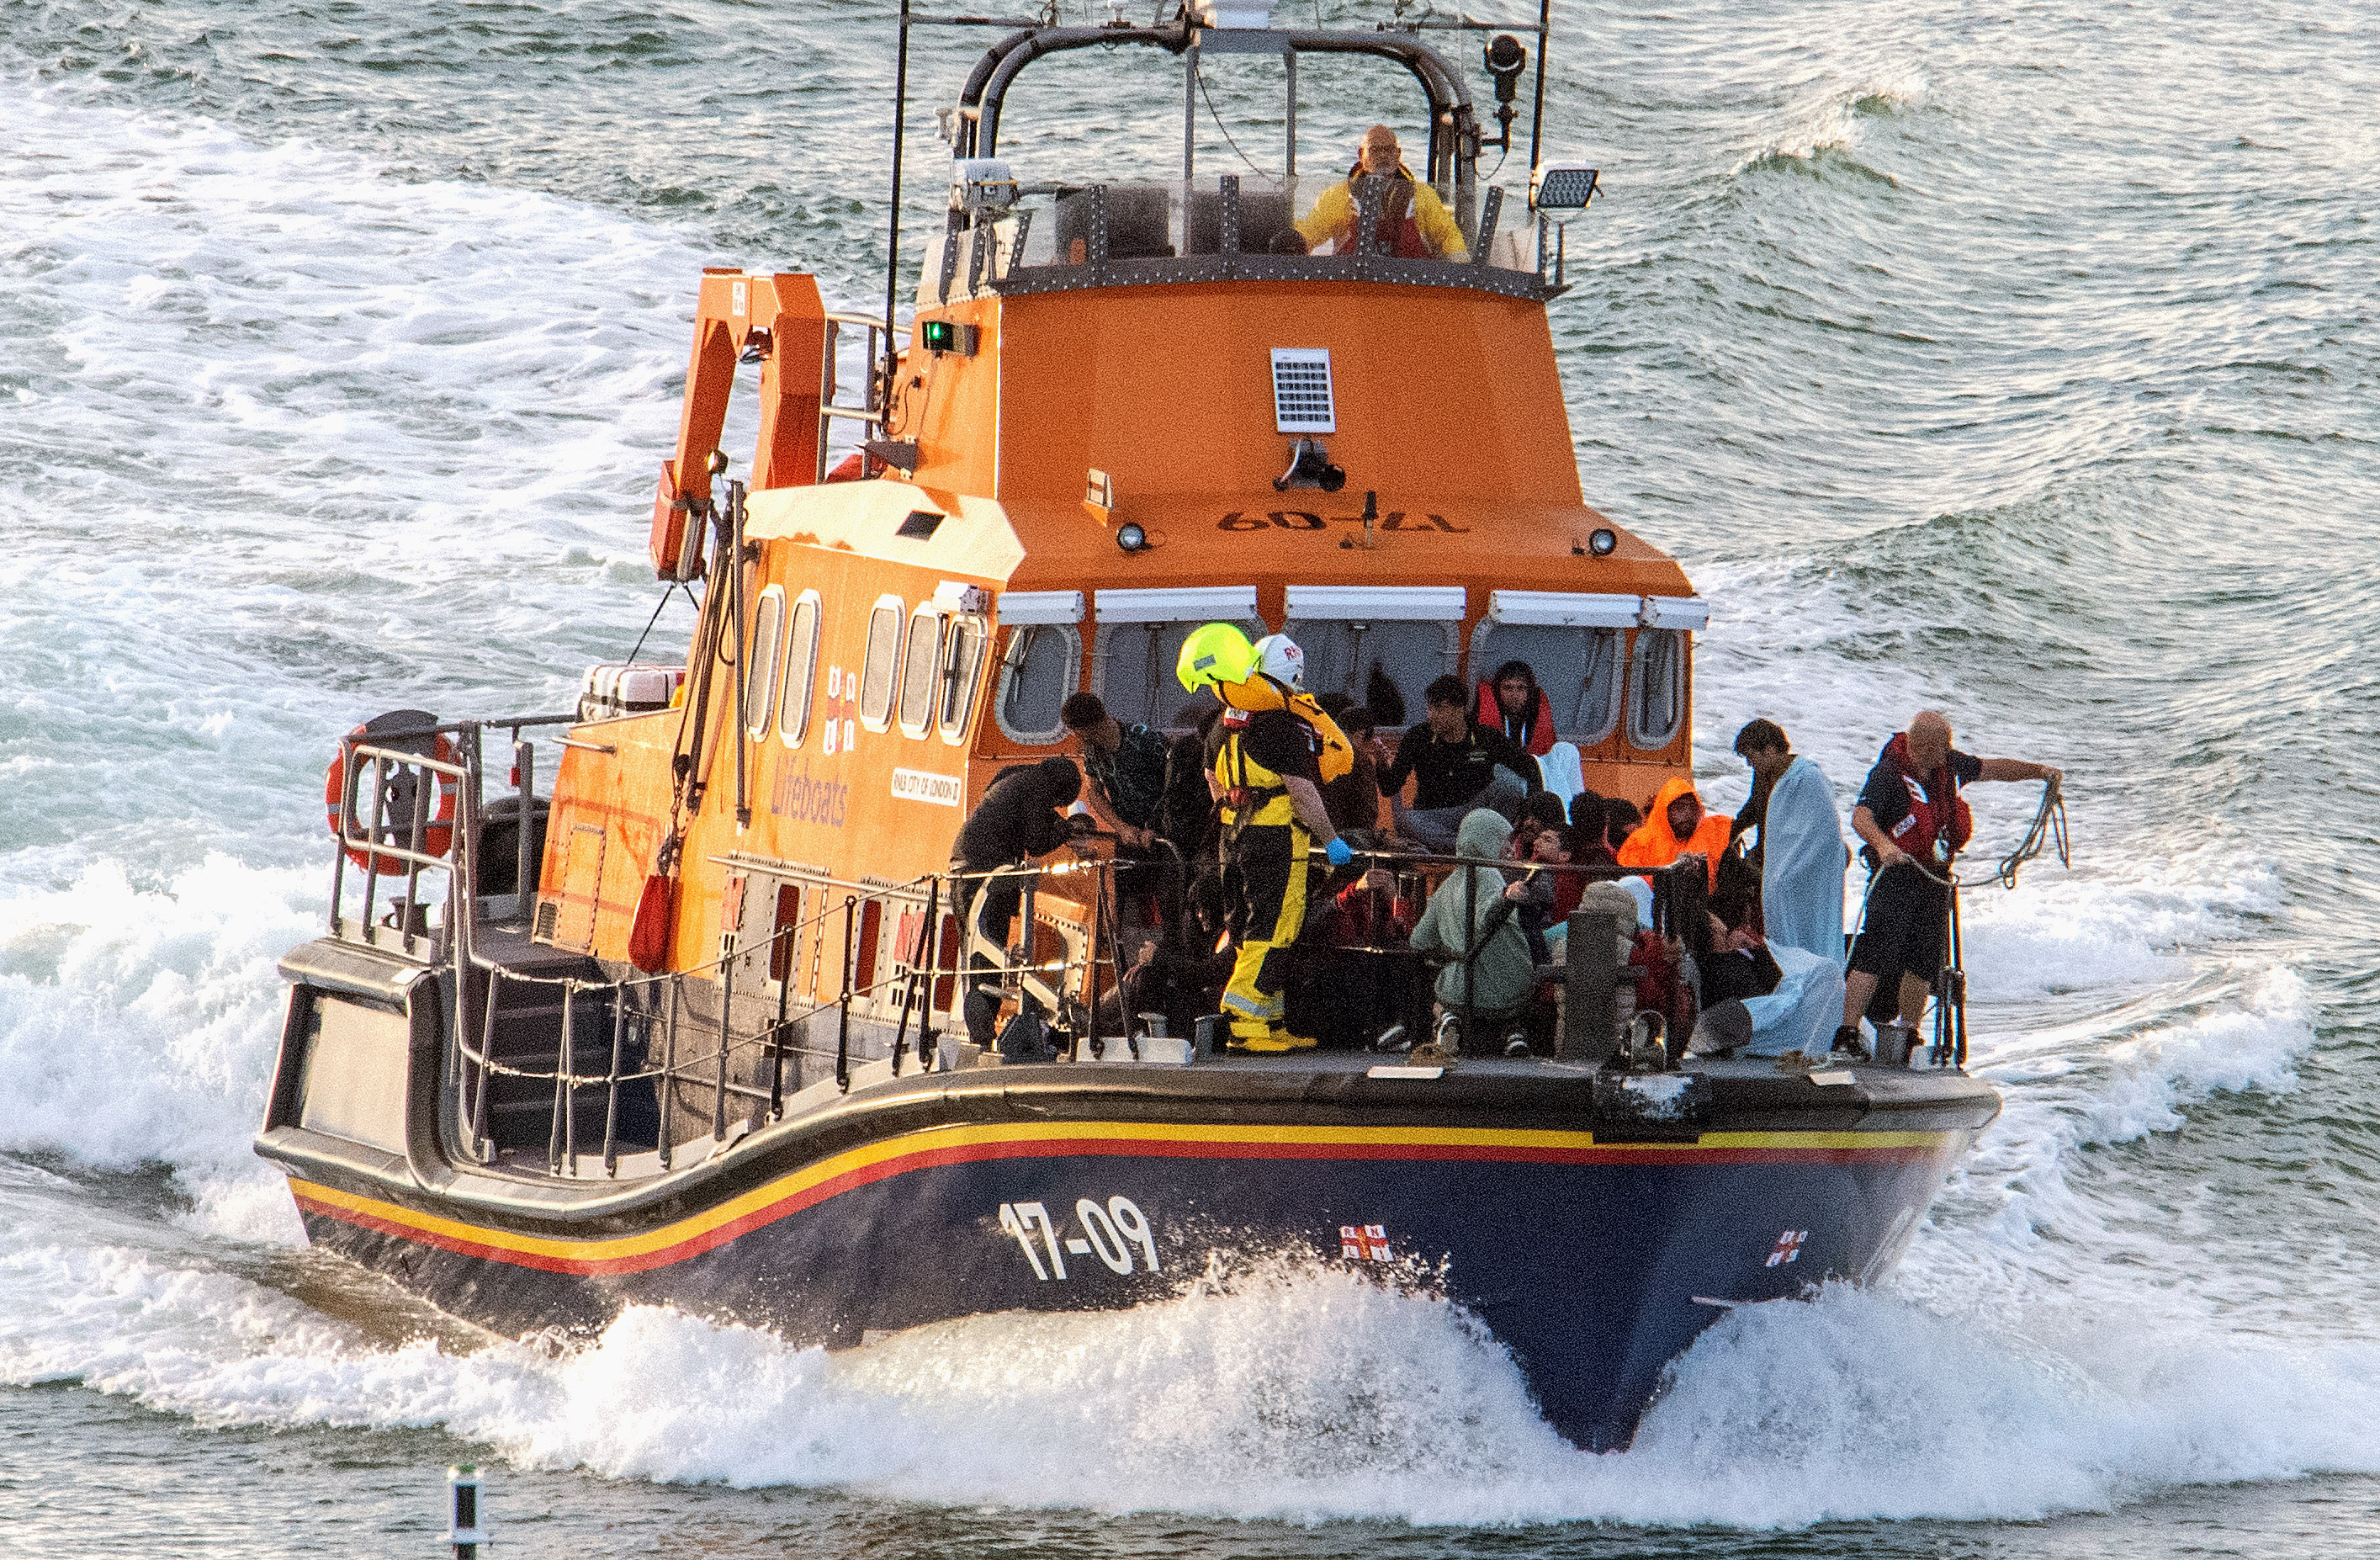 Sechs Menschen kamen ums Leben, nachdem das Boot sank, viele andere wurden an Land gebracht